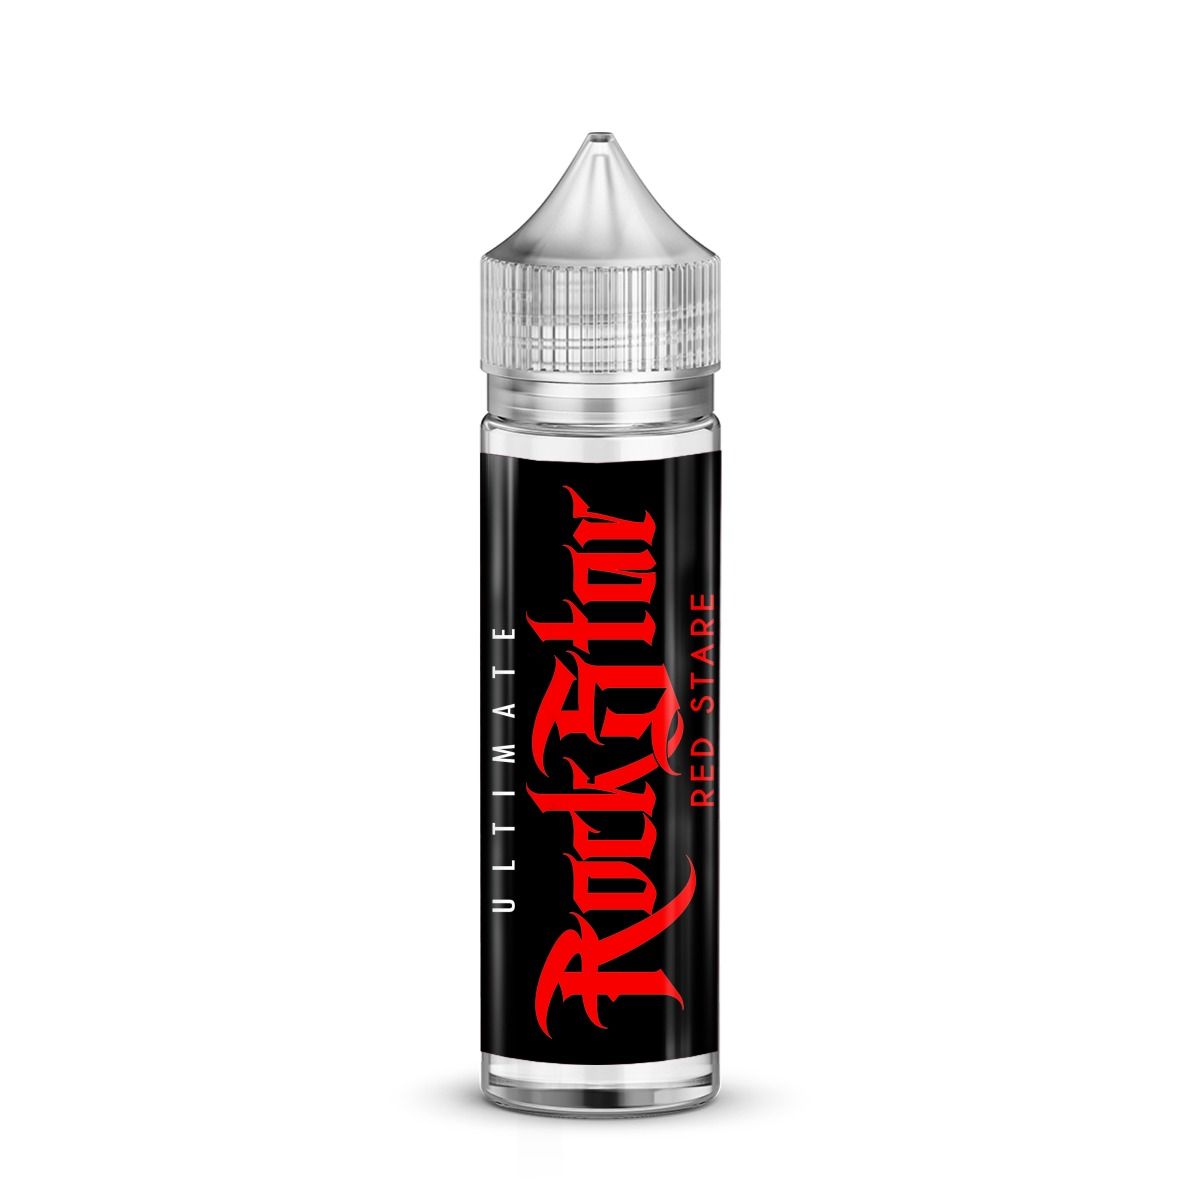 Ultimate Red Stare E-Liquid by Rockstar 50ml Shortfill